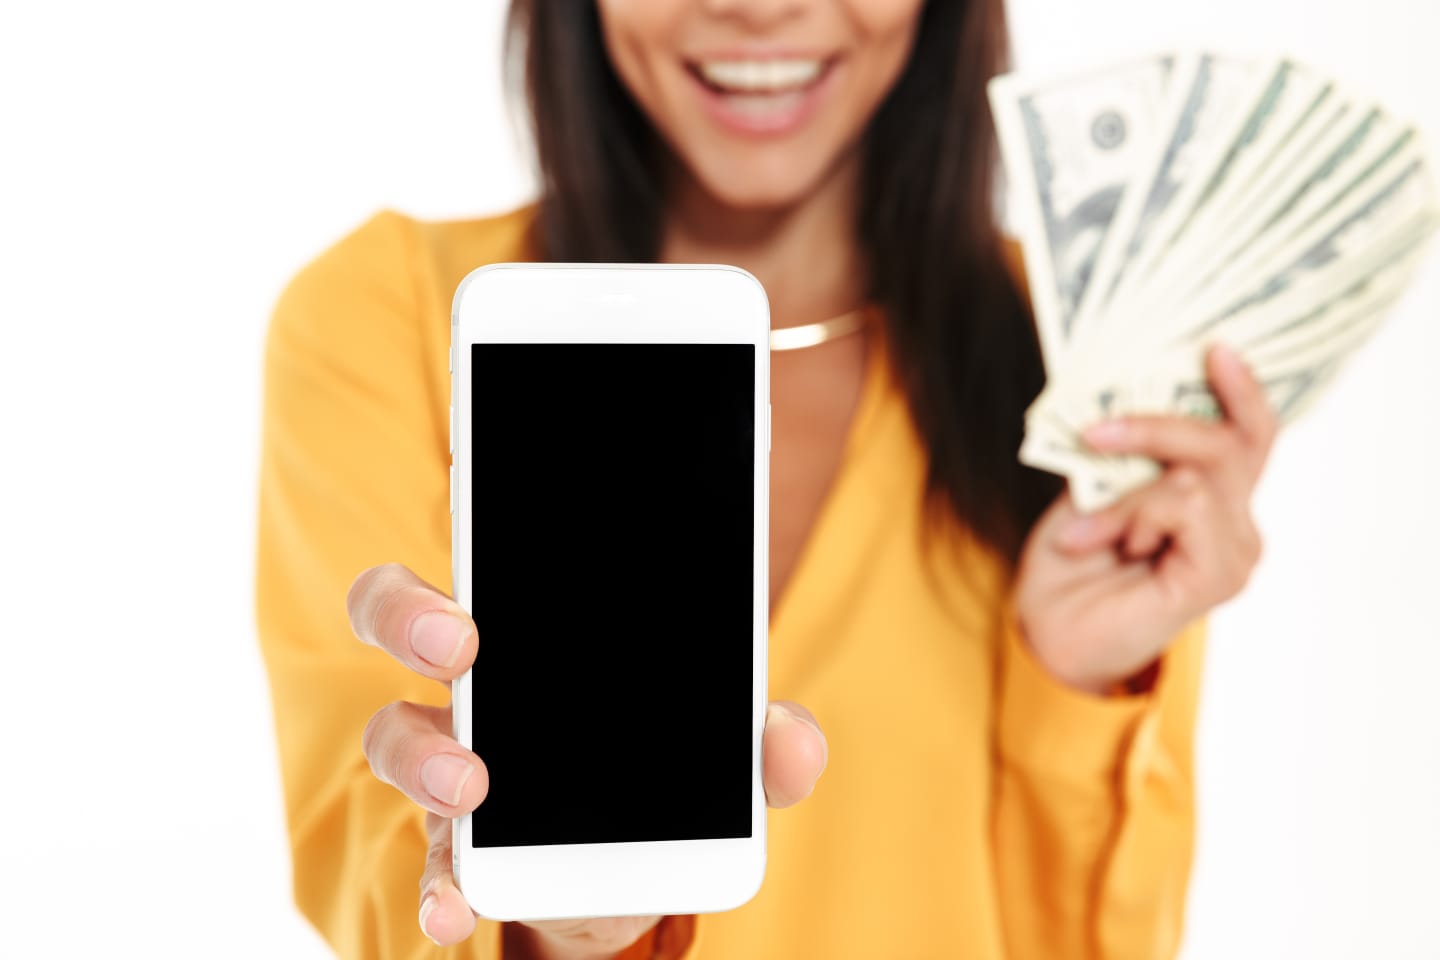 imagen de una persona con un celular en la mano y muchos billetes en la otra mano